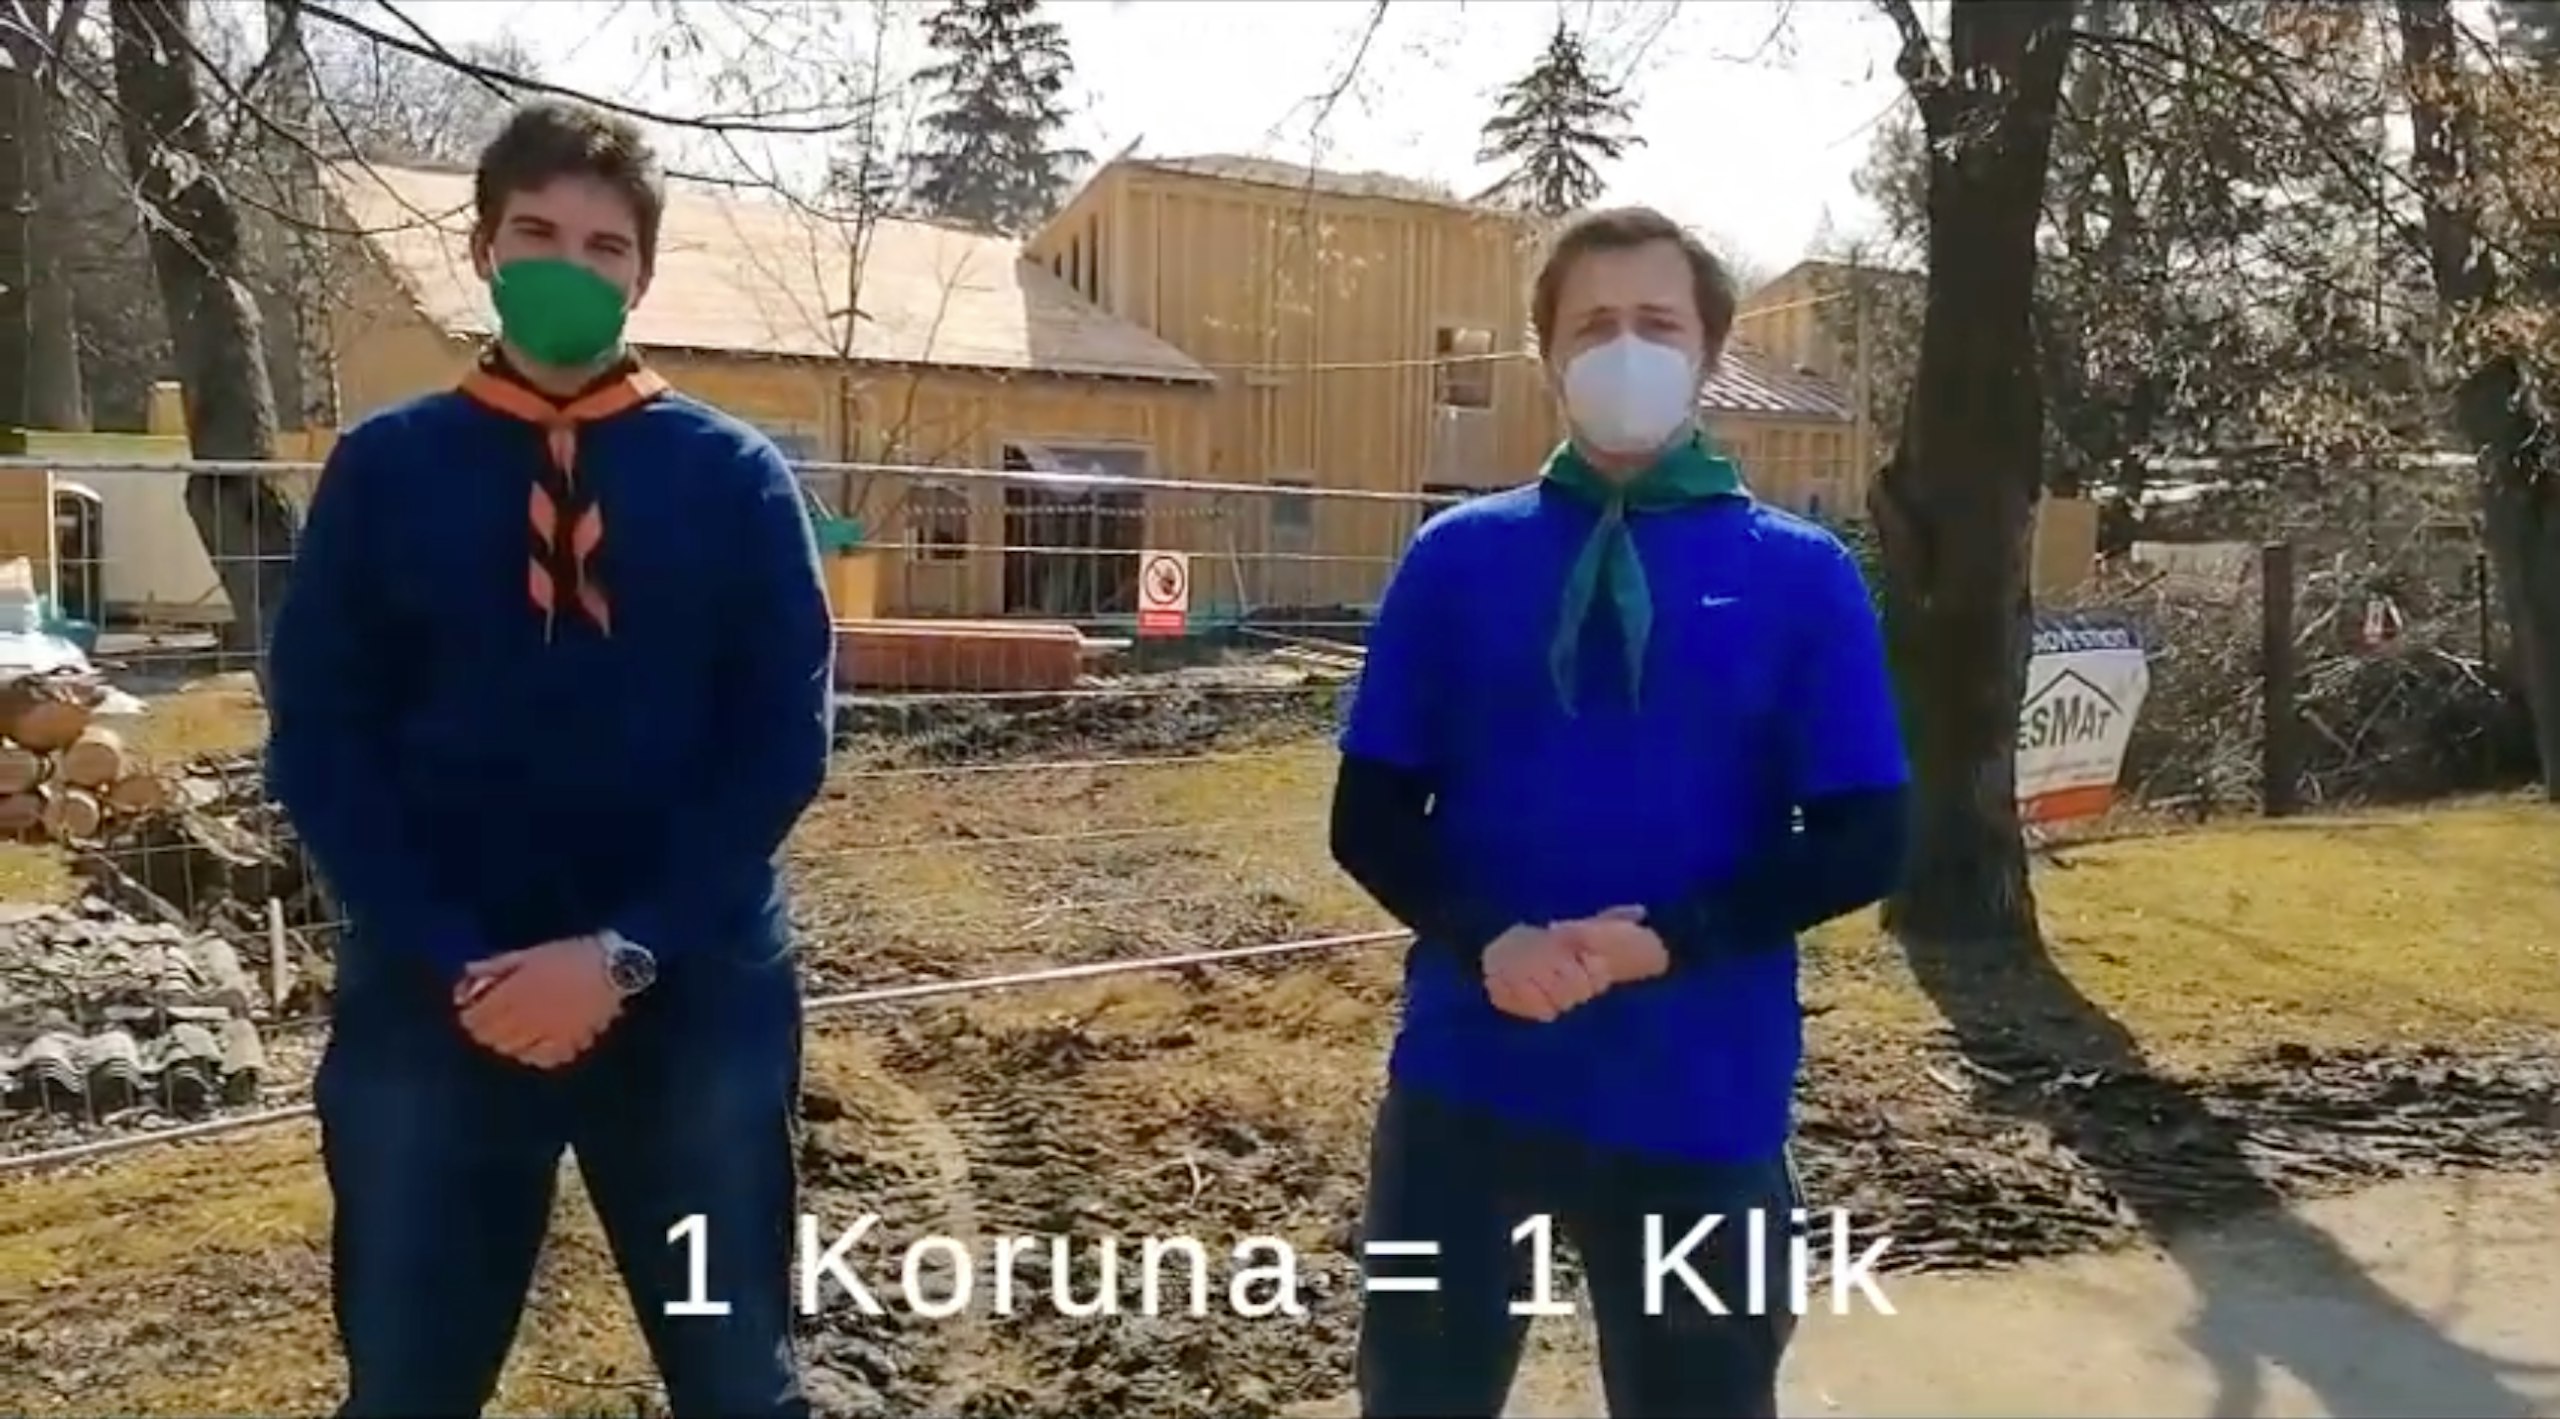 Dva skauti před rozestavěným skauským domem ve Vyškově představují svou výzvu pro fundraising